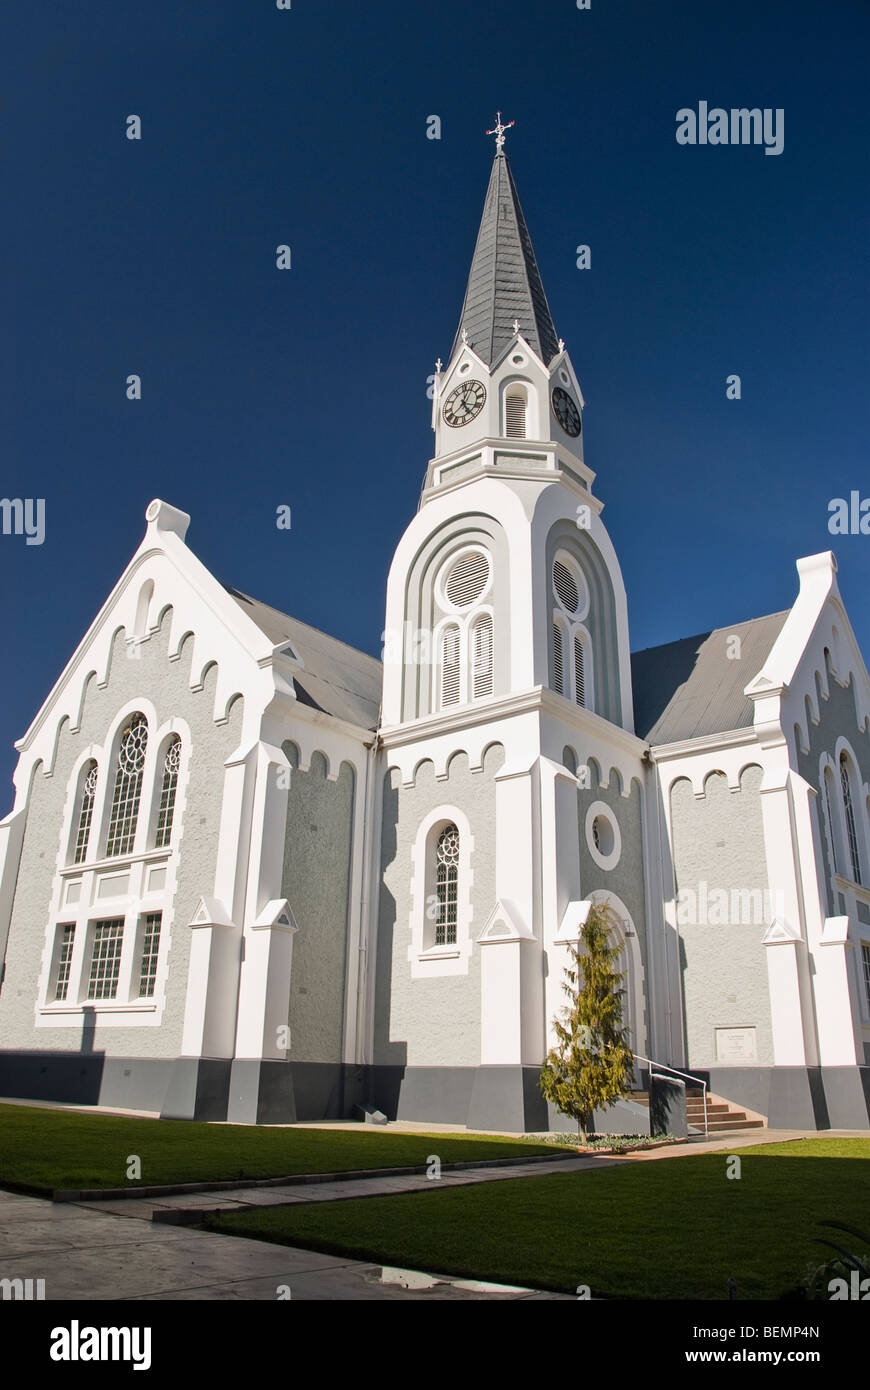 Église chrétienne dans la campagne du sud de l'Afrique, l'Afrique. Banque D'Images